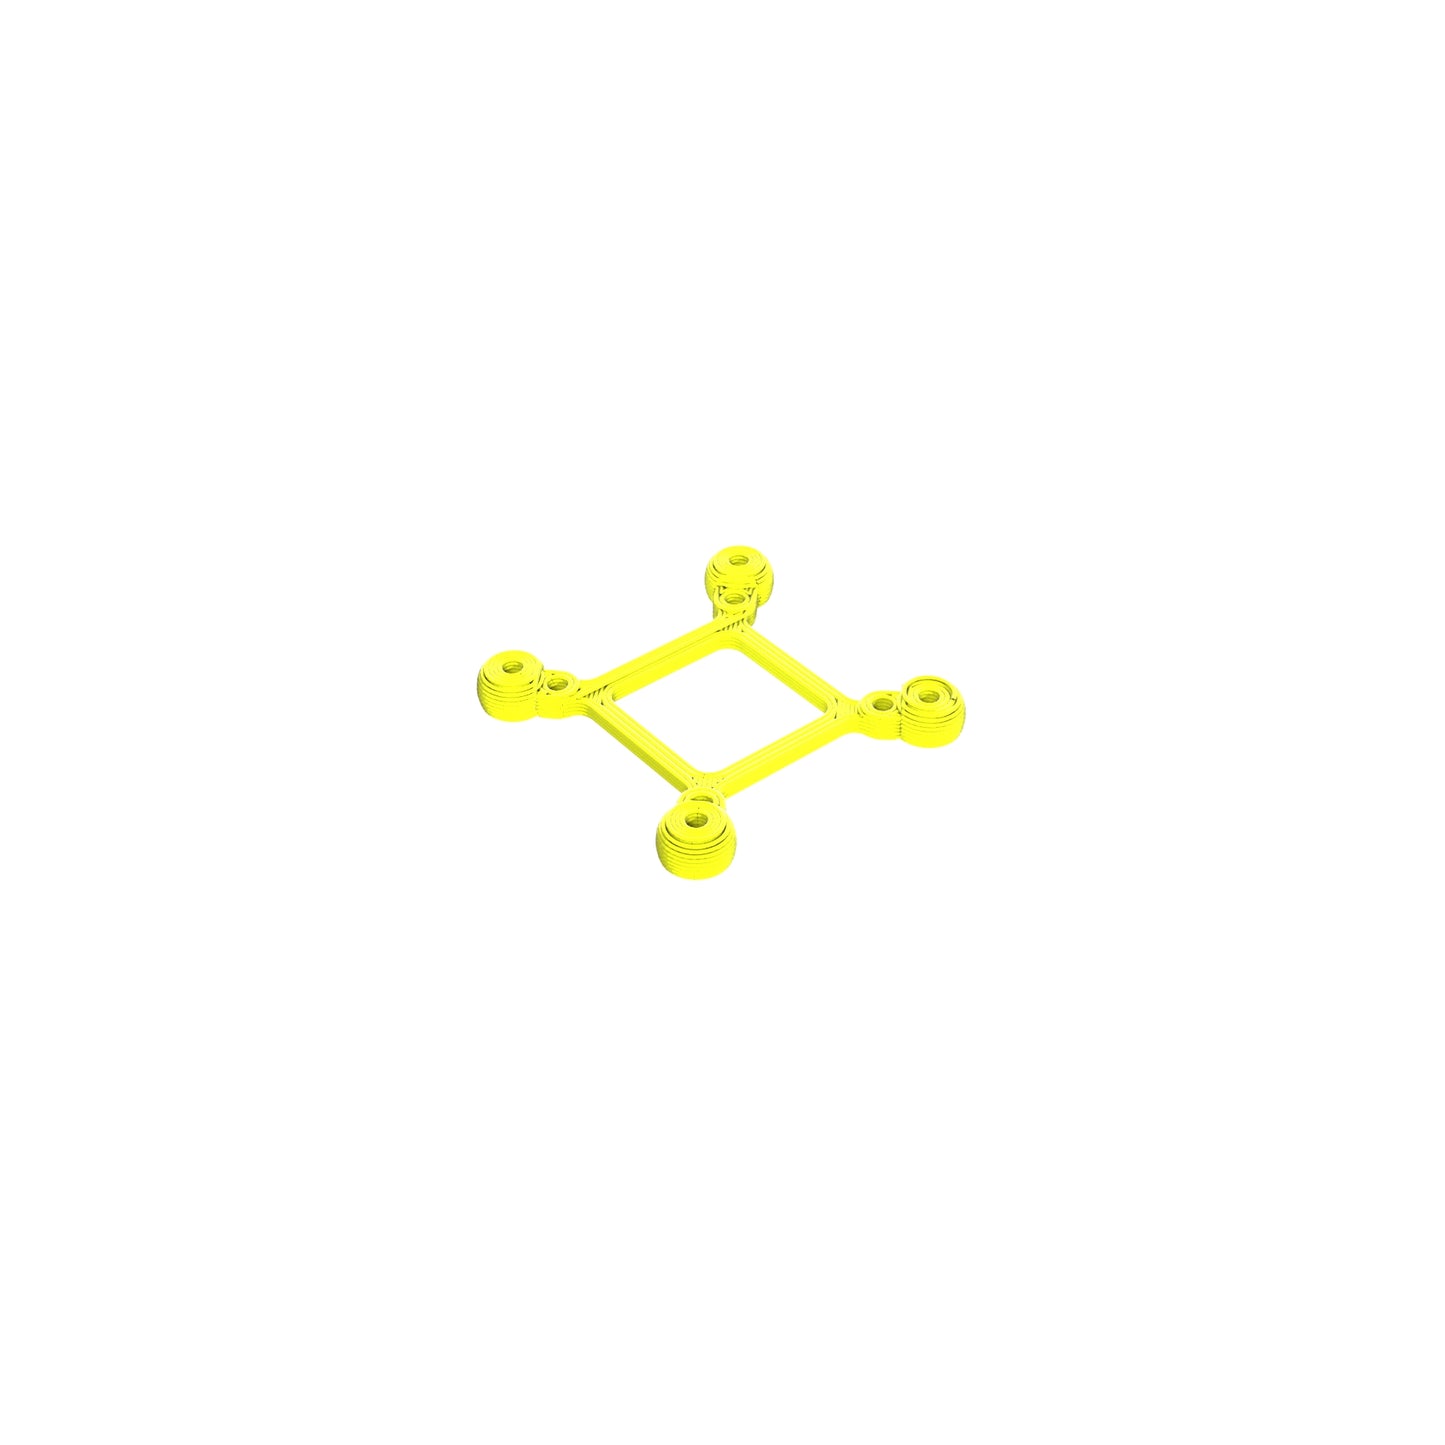 DJI O3 20x20 Mounting Adapter TPU 3D Printed Neon Yellow